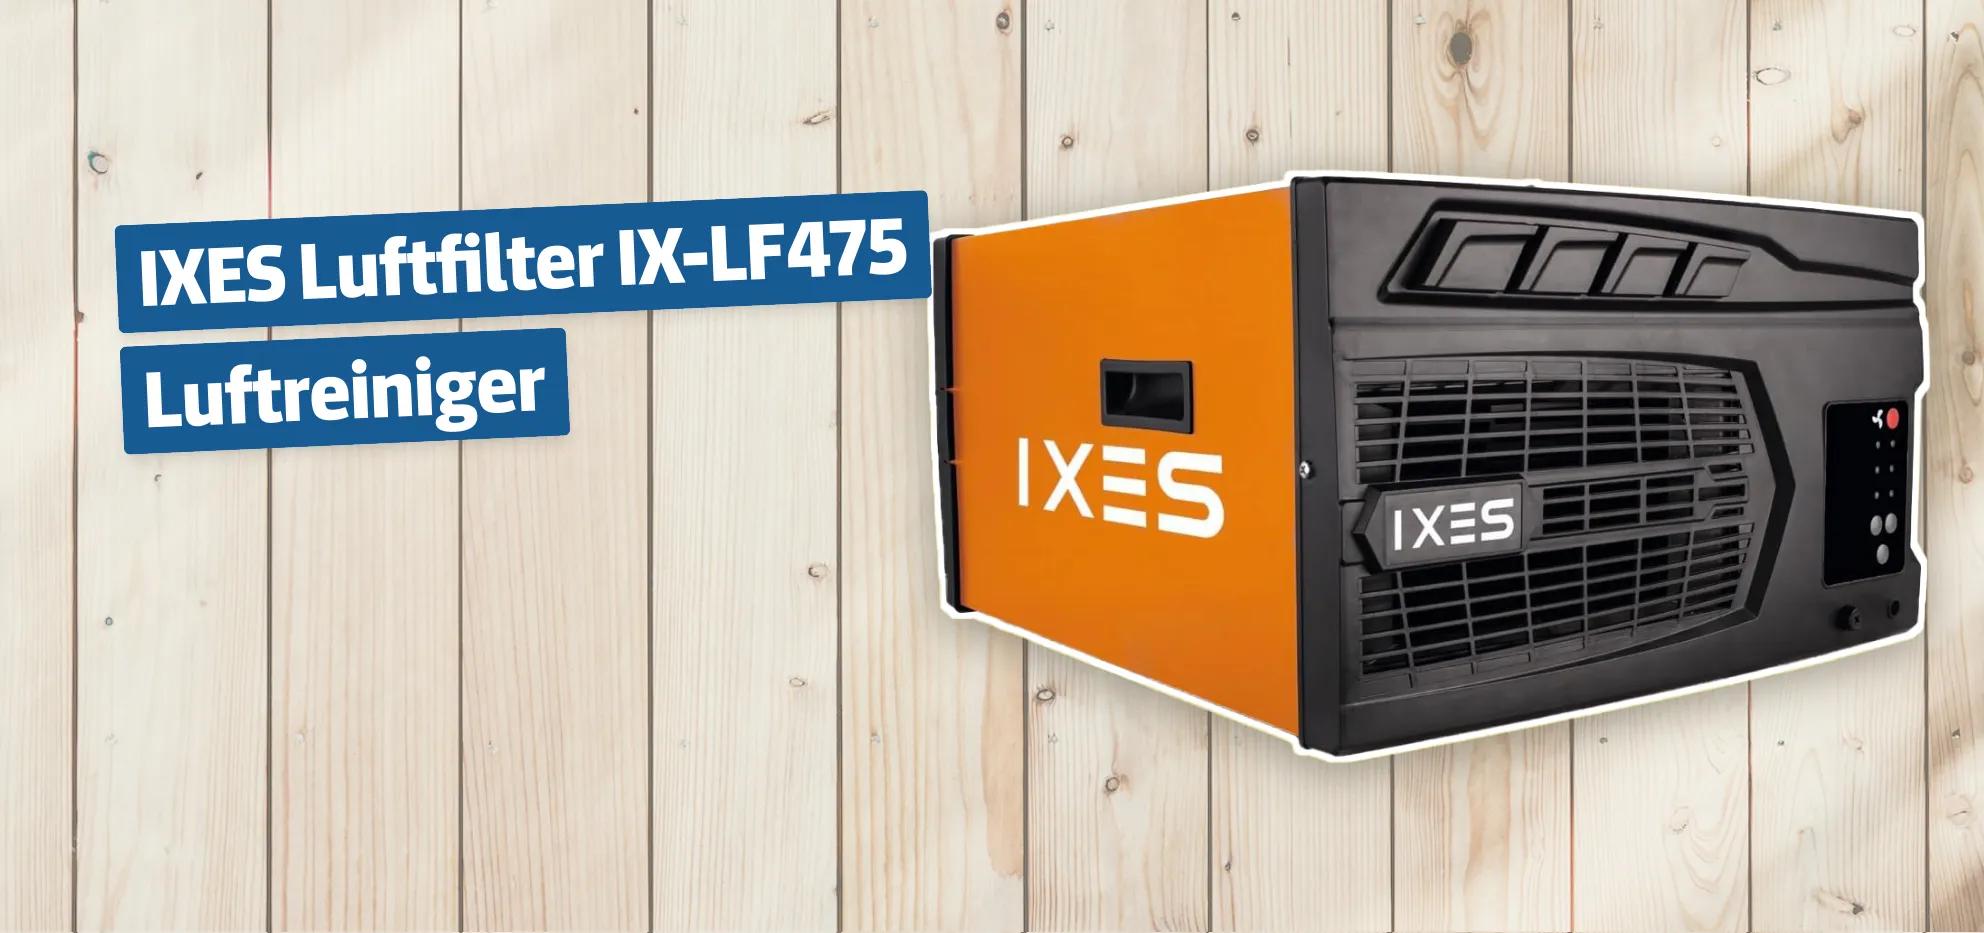 IXES Luftfilter IX-LF475 Luftreiniger